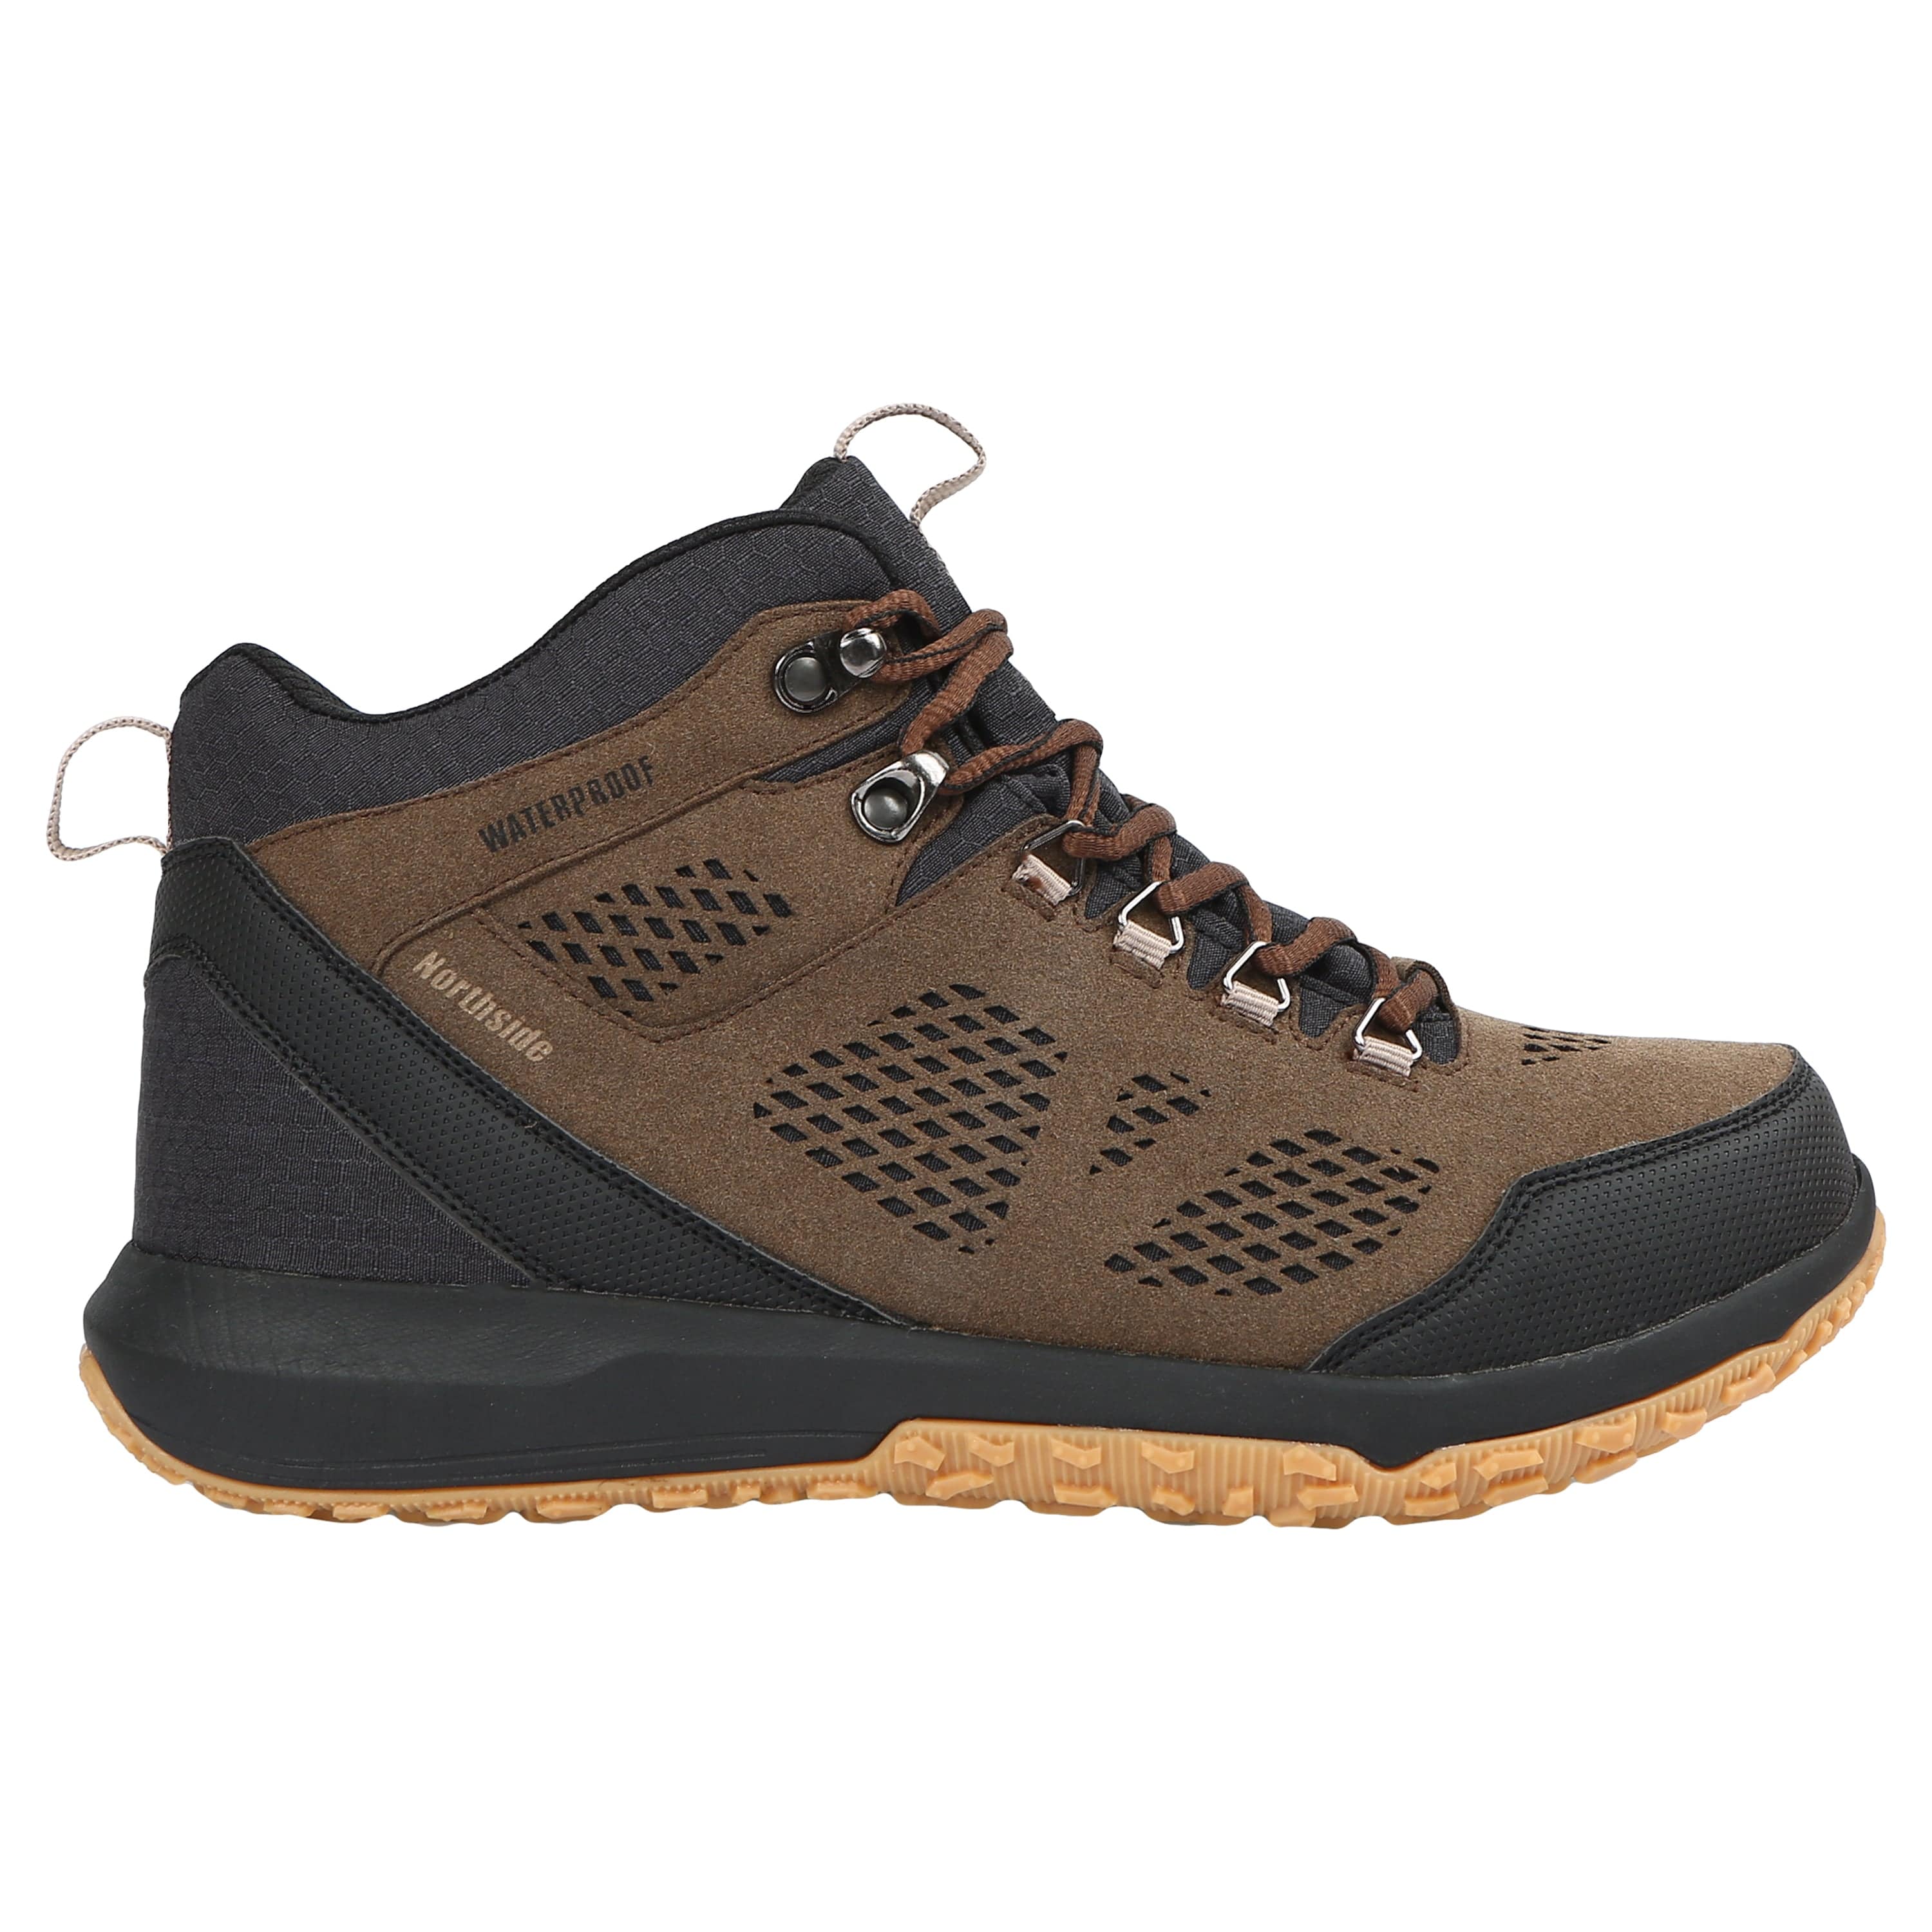 Men's Benton Mid Waterproof Hiking Boot - Northside USA